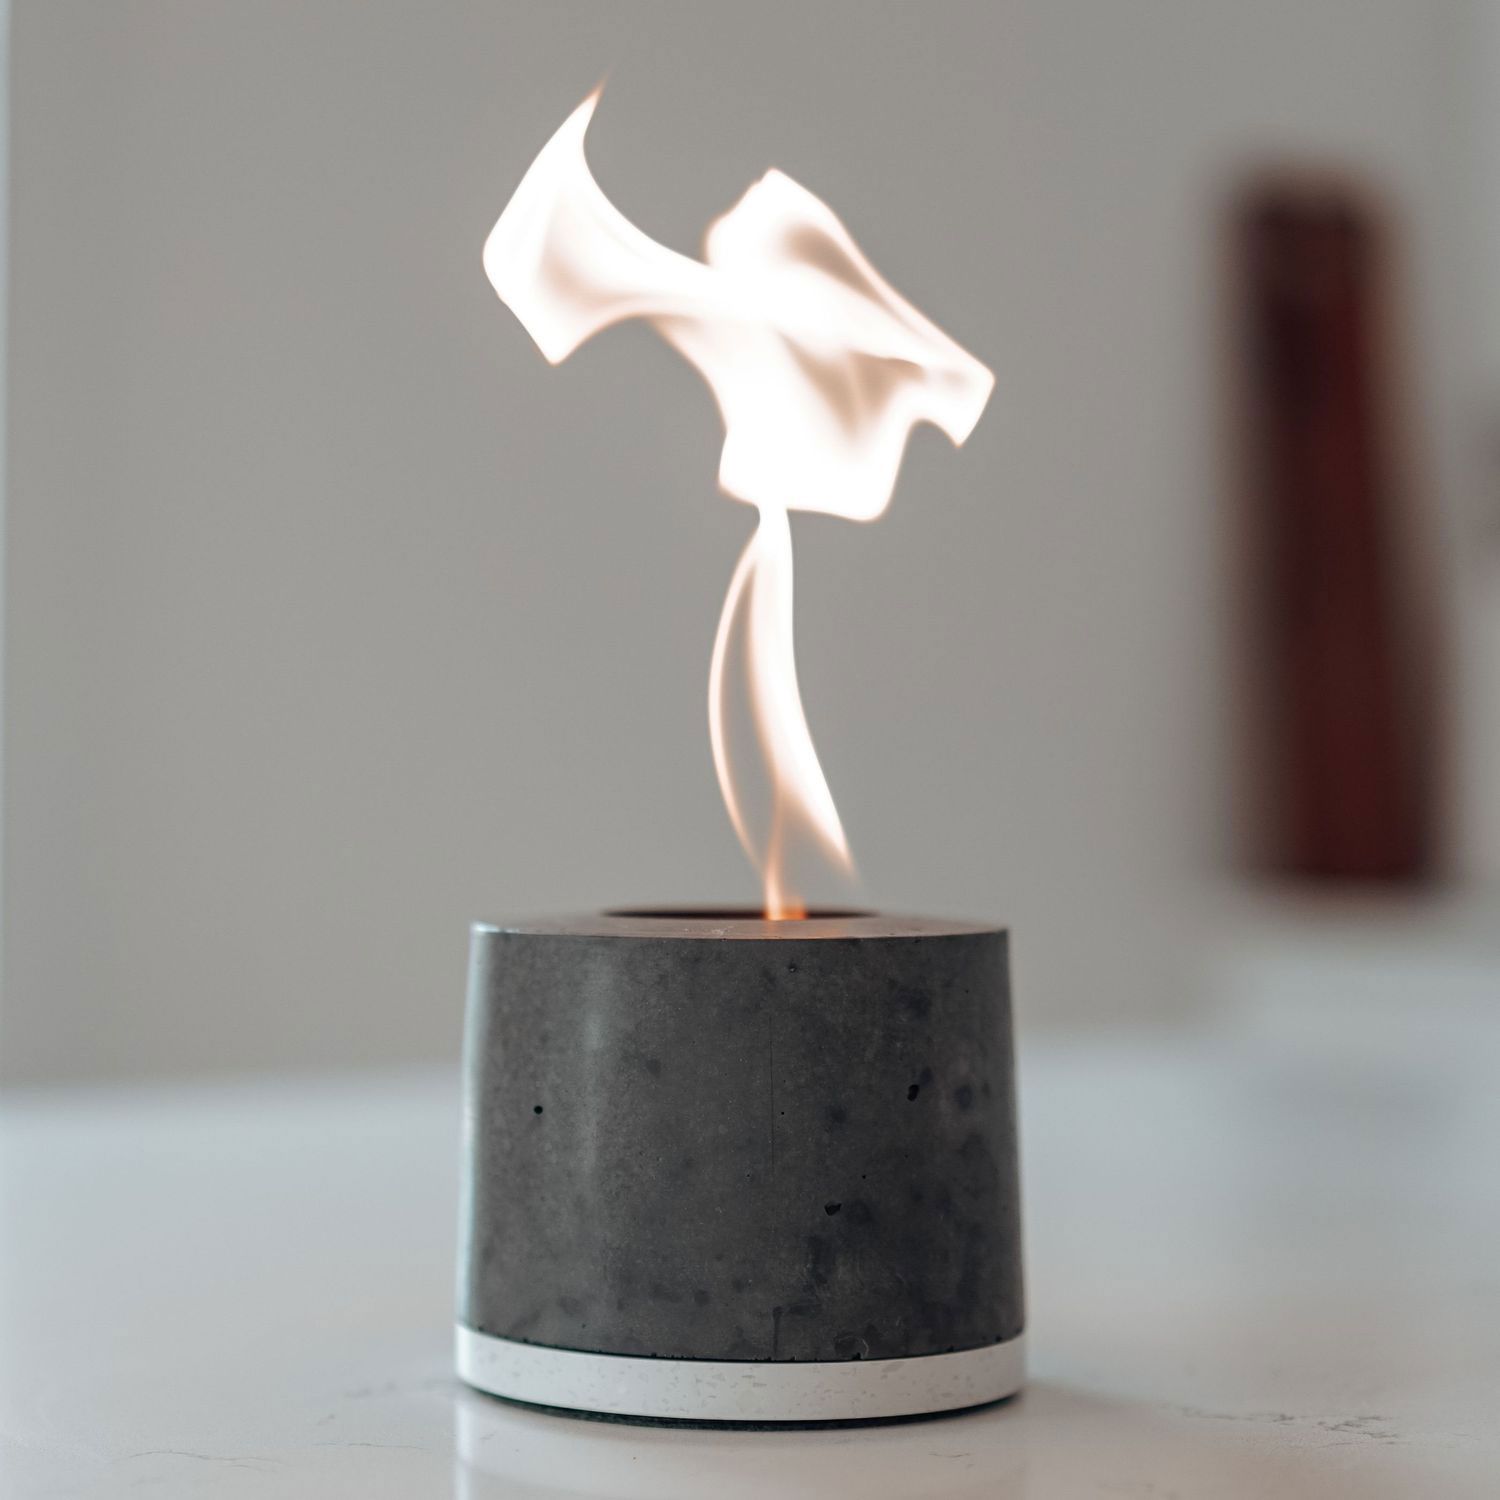 Labākās dāvanas, dāvanu idejas sievietēm - Flîkr Fire Personal Concrete Fireplace